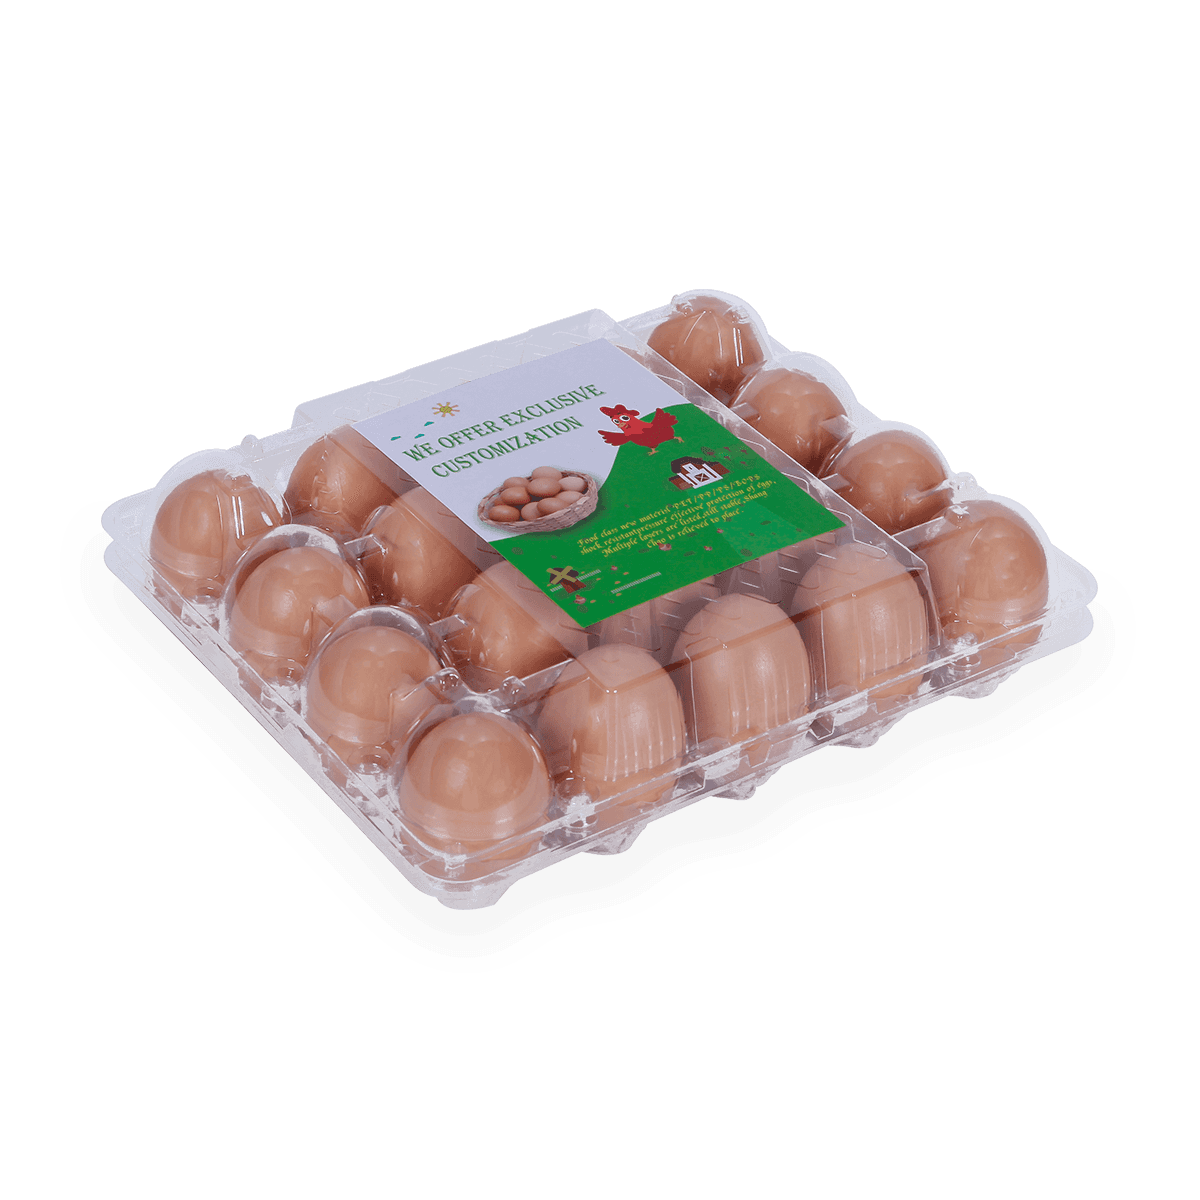 100% reciclable 6 12 18 20 24 25 celdas cartones de huevos de plástico etiquetados